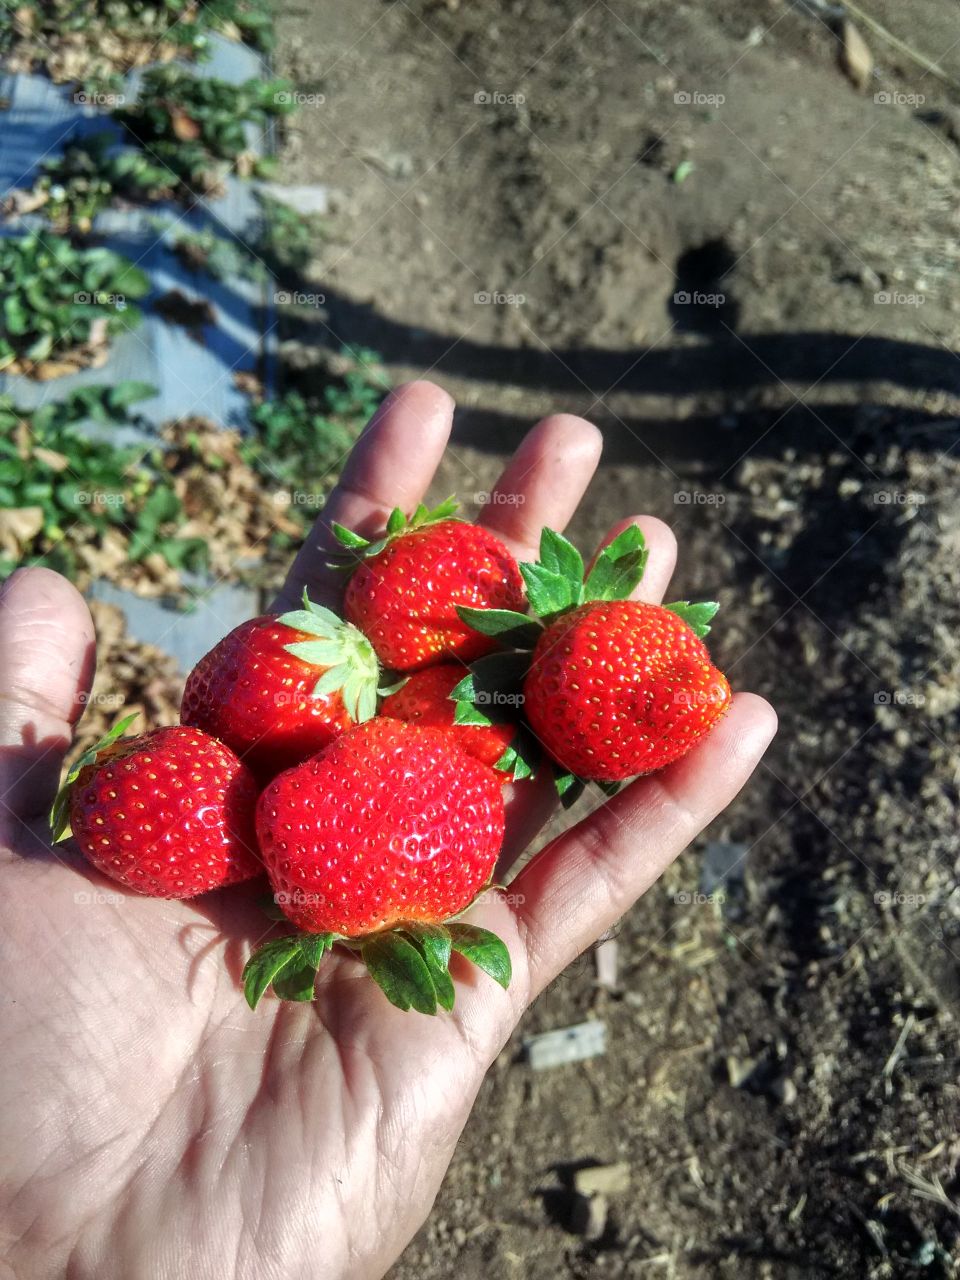 my strawberry farm strawberries